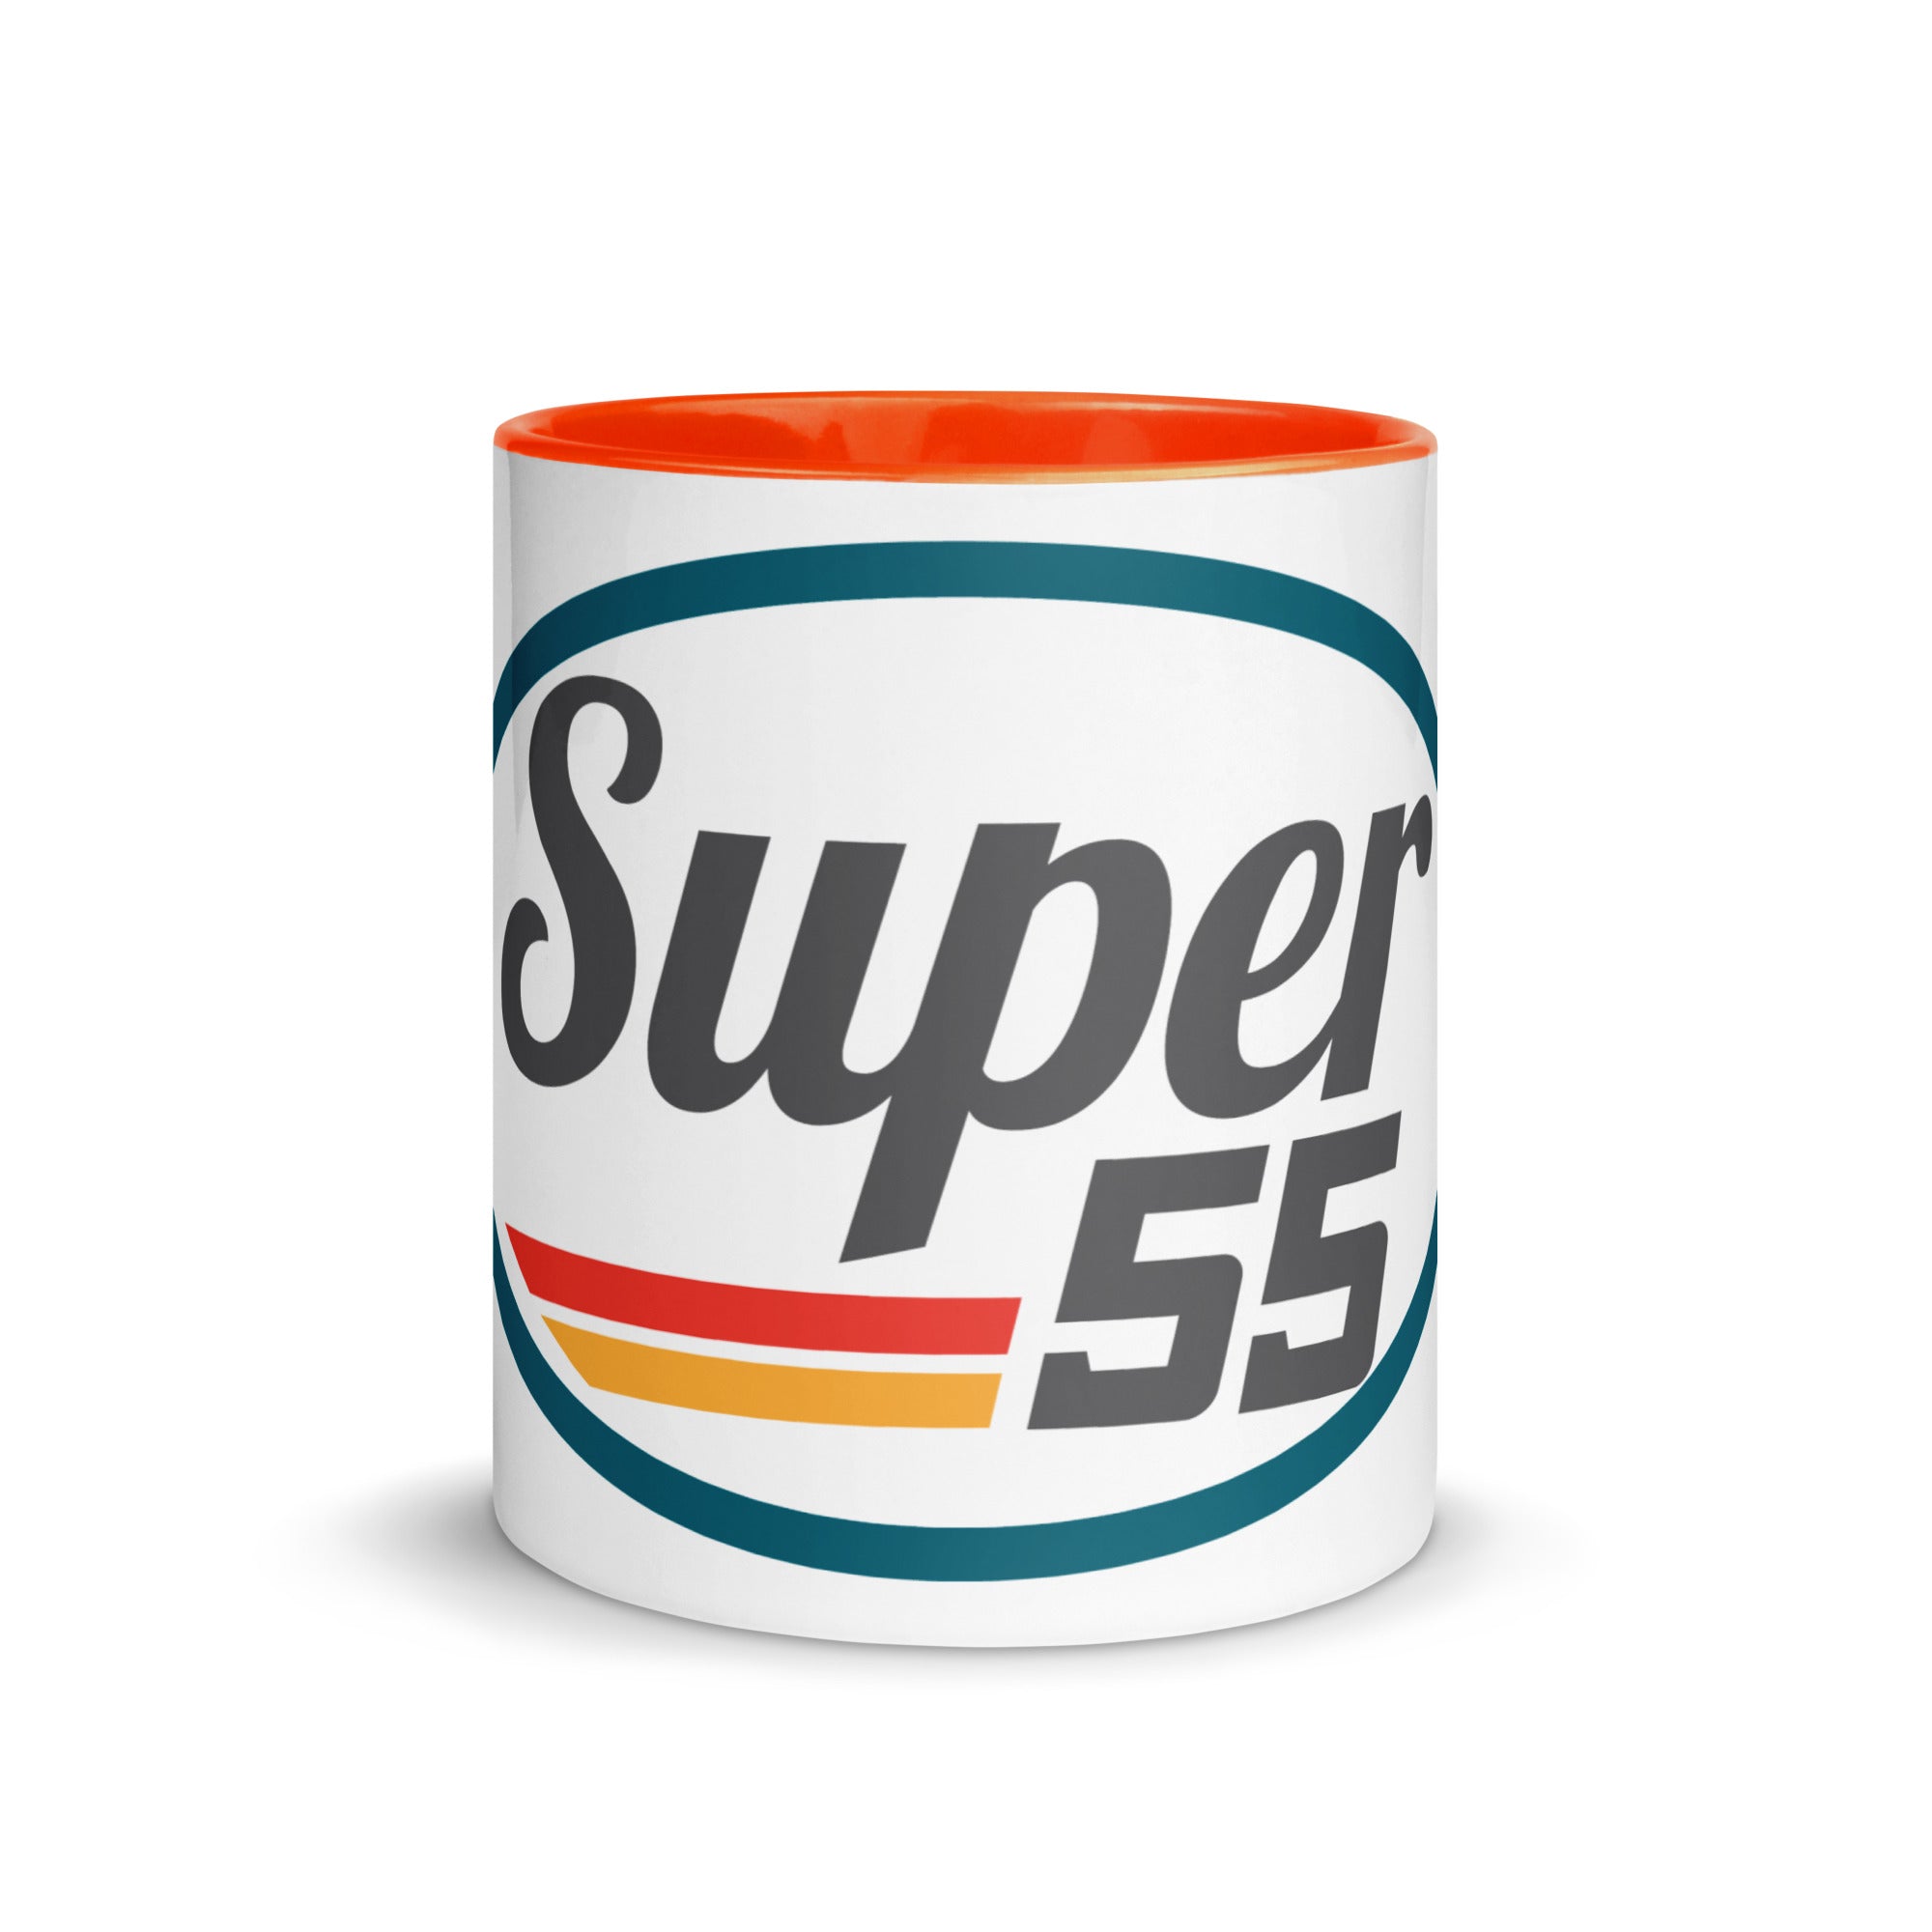 Super55 Mug with Color Inside